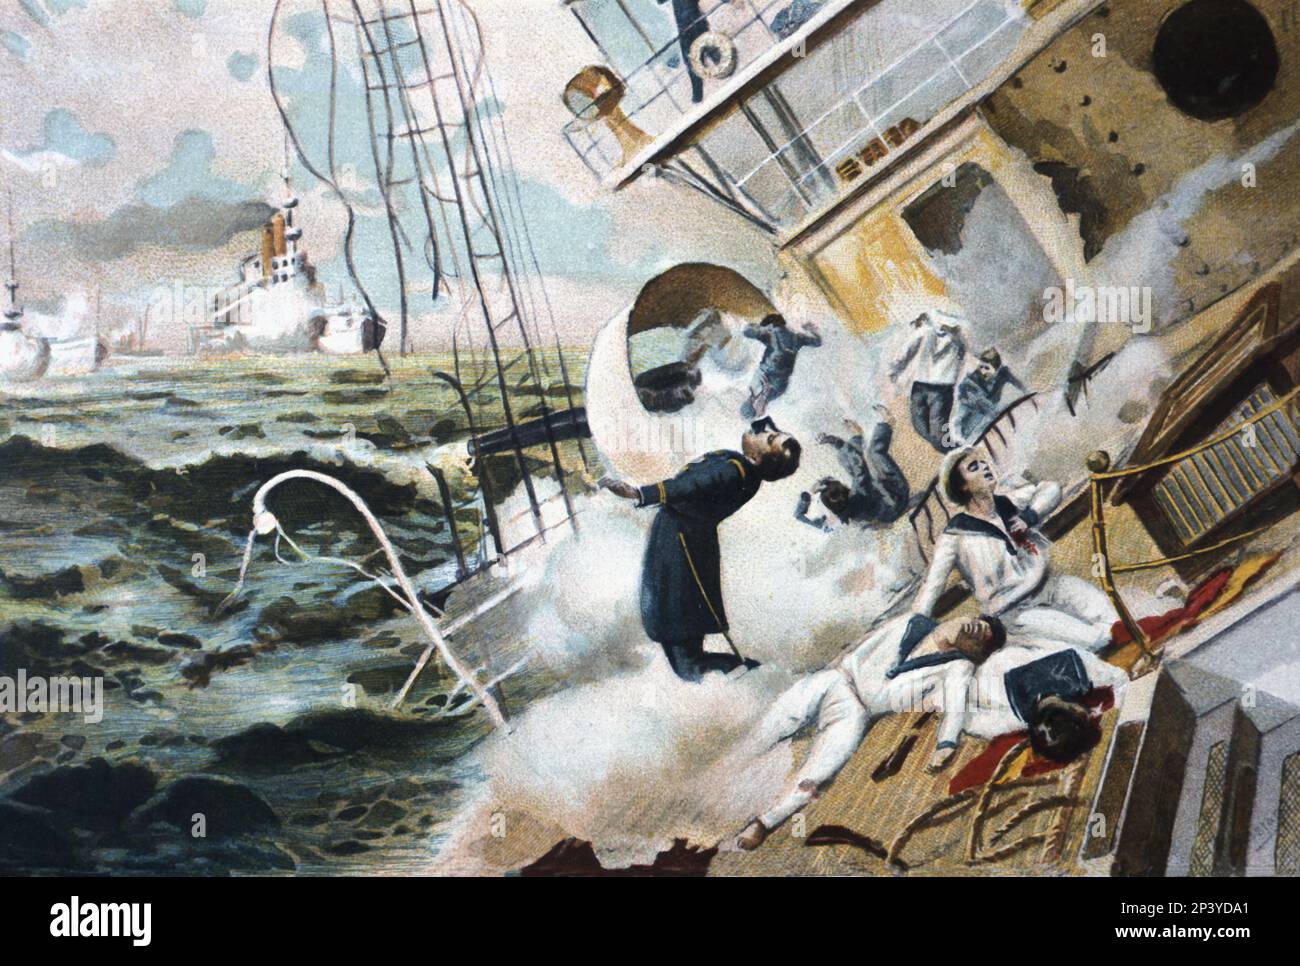 Kubanischer Krieg. Verlust der spanischen Staffel unter dem Kommando von Admiral Cervera in den Gewässern von Santiago de Cuba am 13-7-1898. Stockfoto